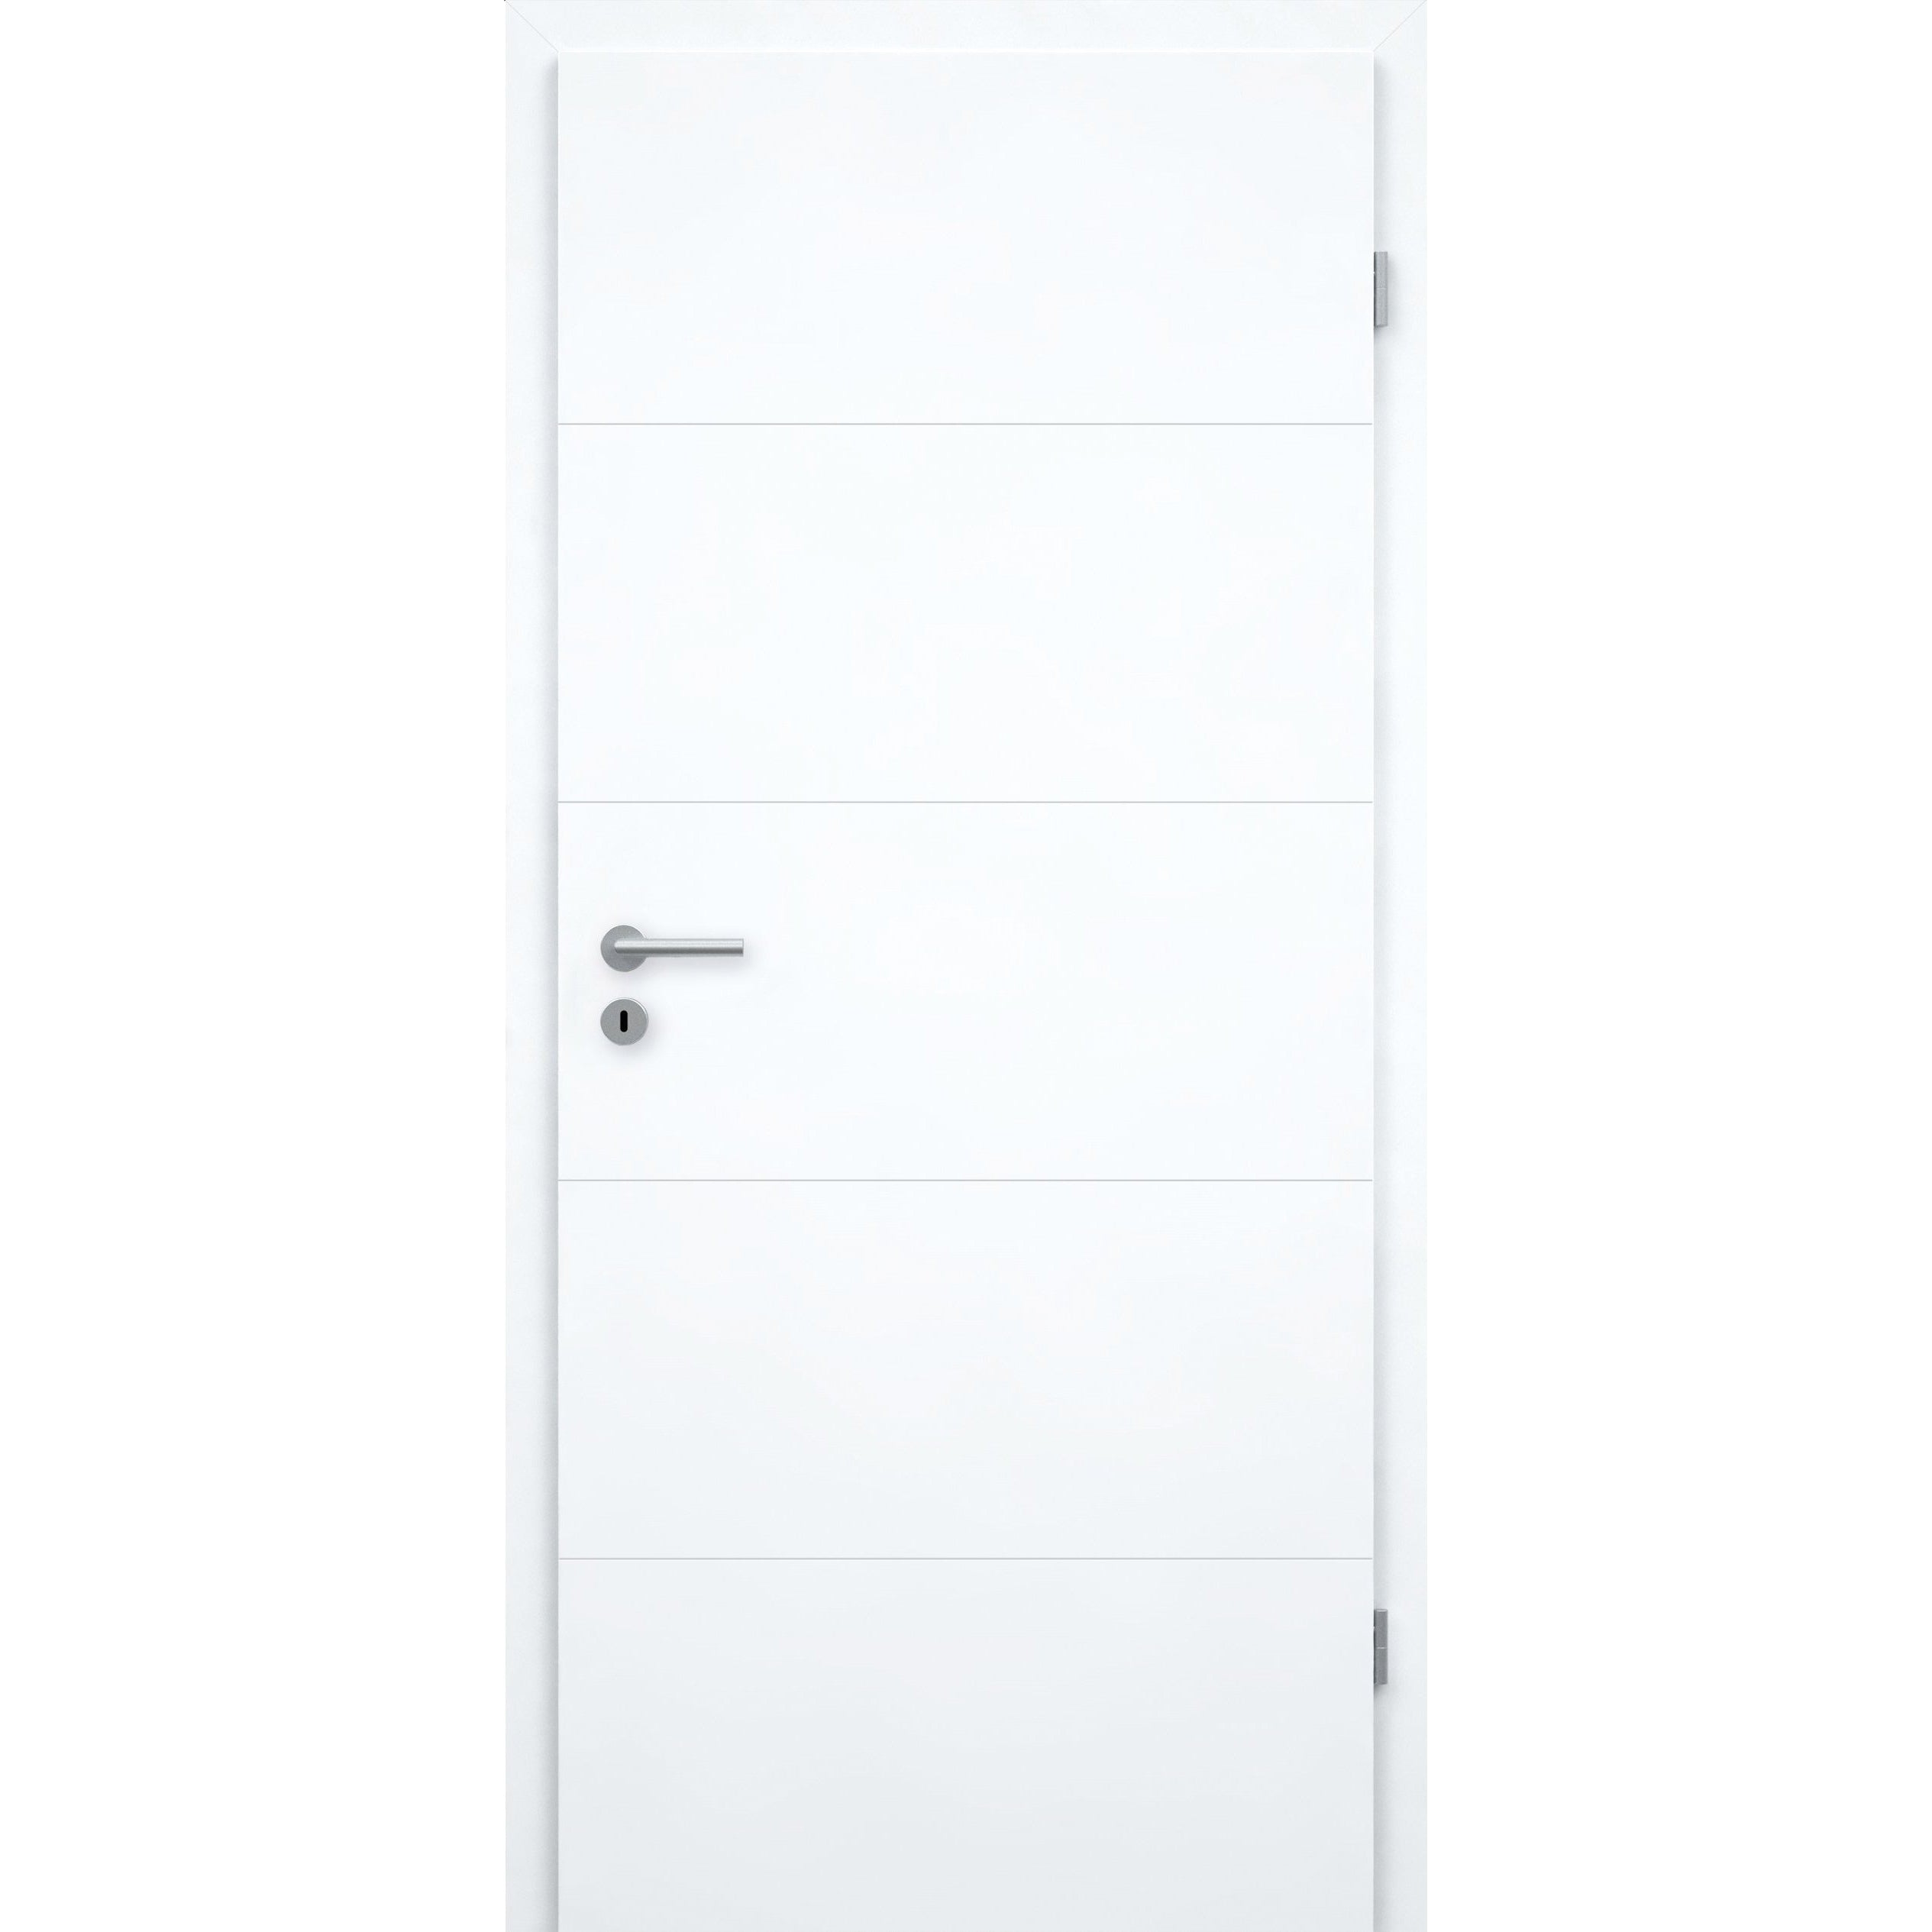 Wohnungseingangstür mit Zarge brillant-weiß 4 Rillen Designkante SK2 / KK3 - Modell Designtür Q43